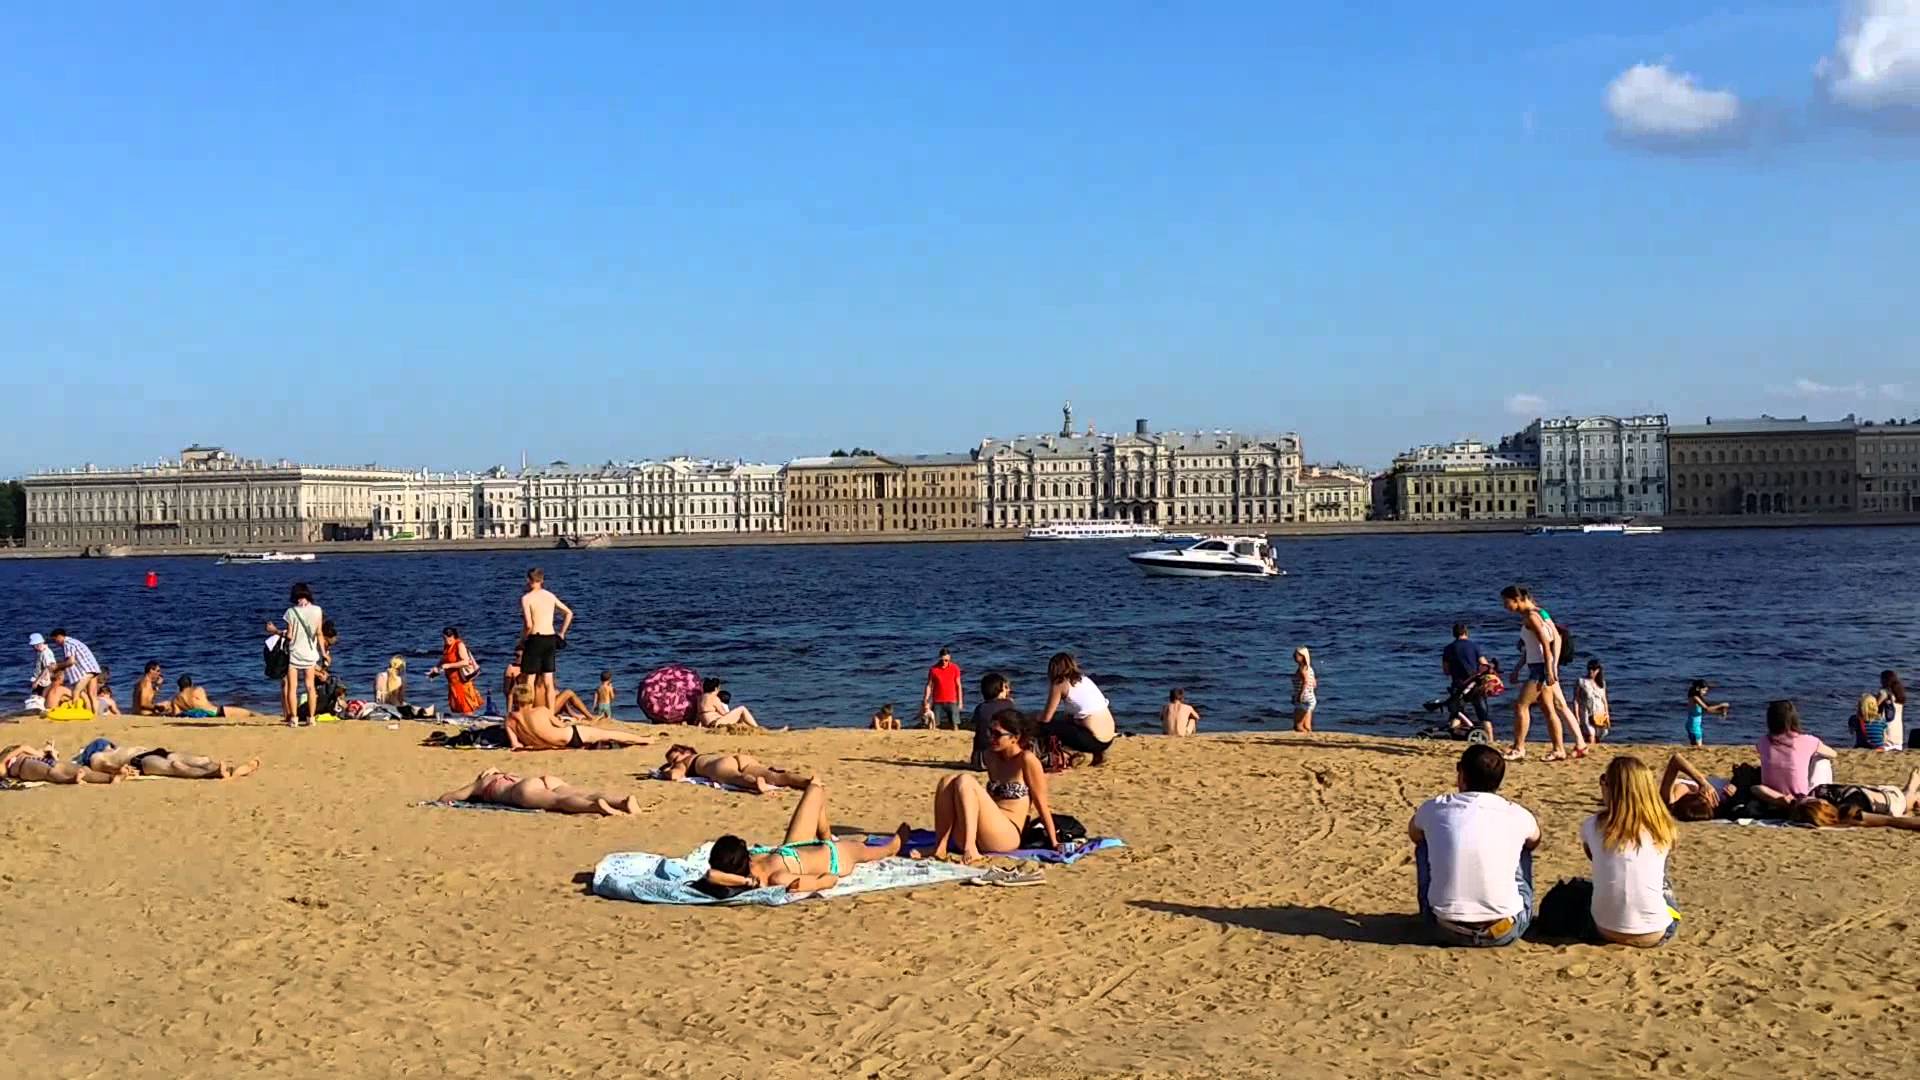 Пляжи петербурга в 2020: где позагорать, поплавать и поплескаться в питере на природе?